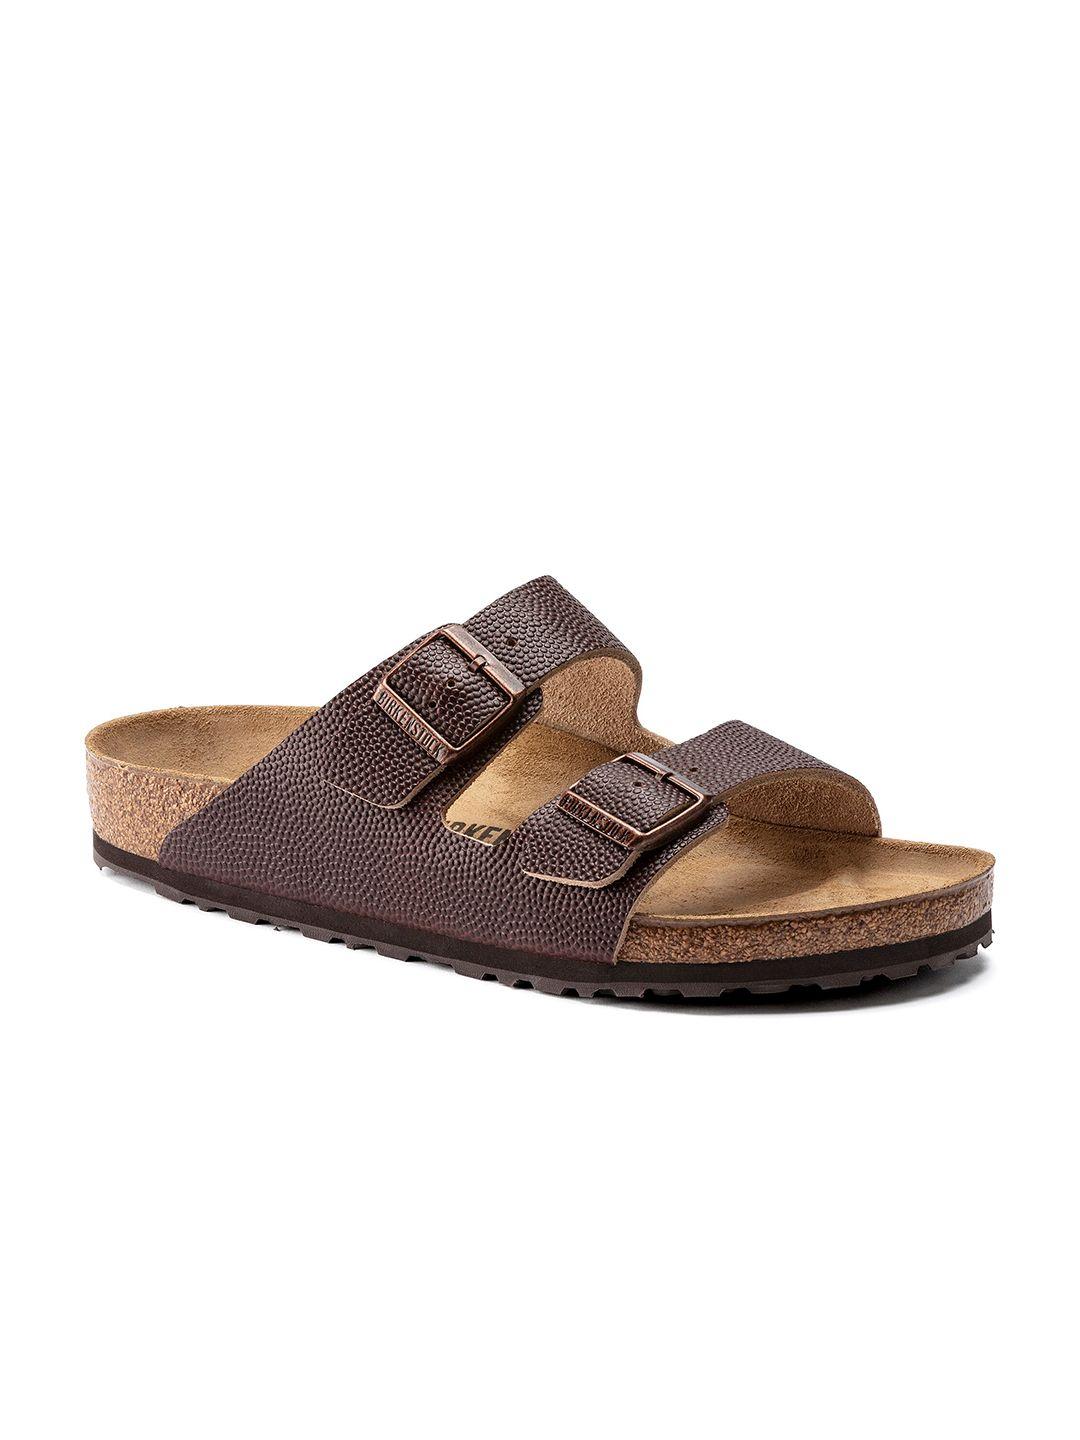 birkenstock men arizona horween regular width two-strap comfort sandals